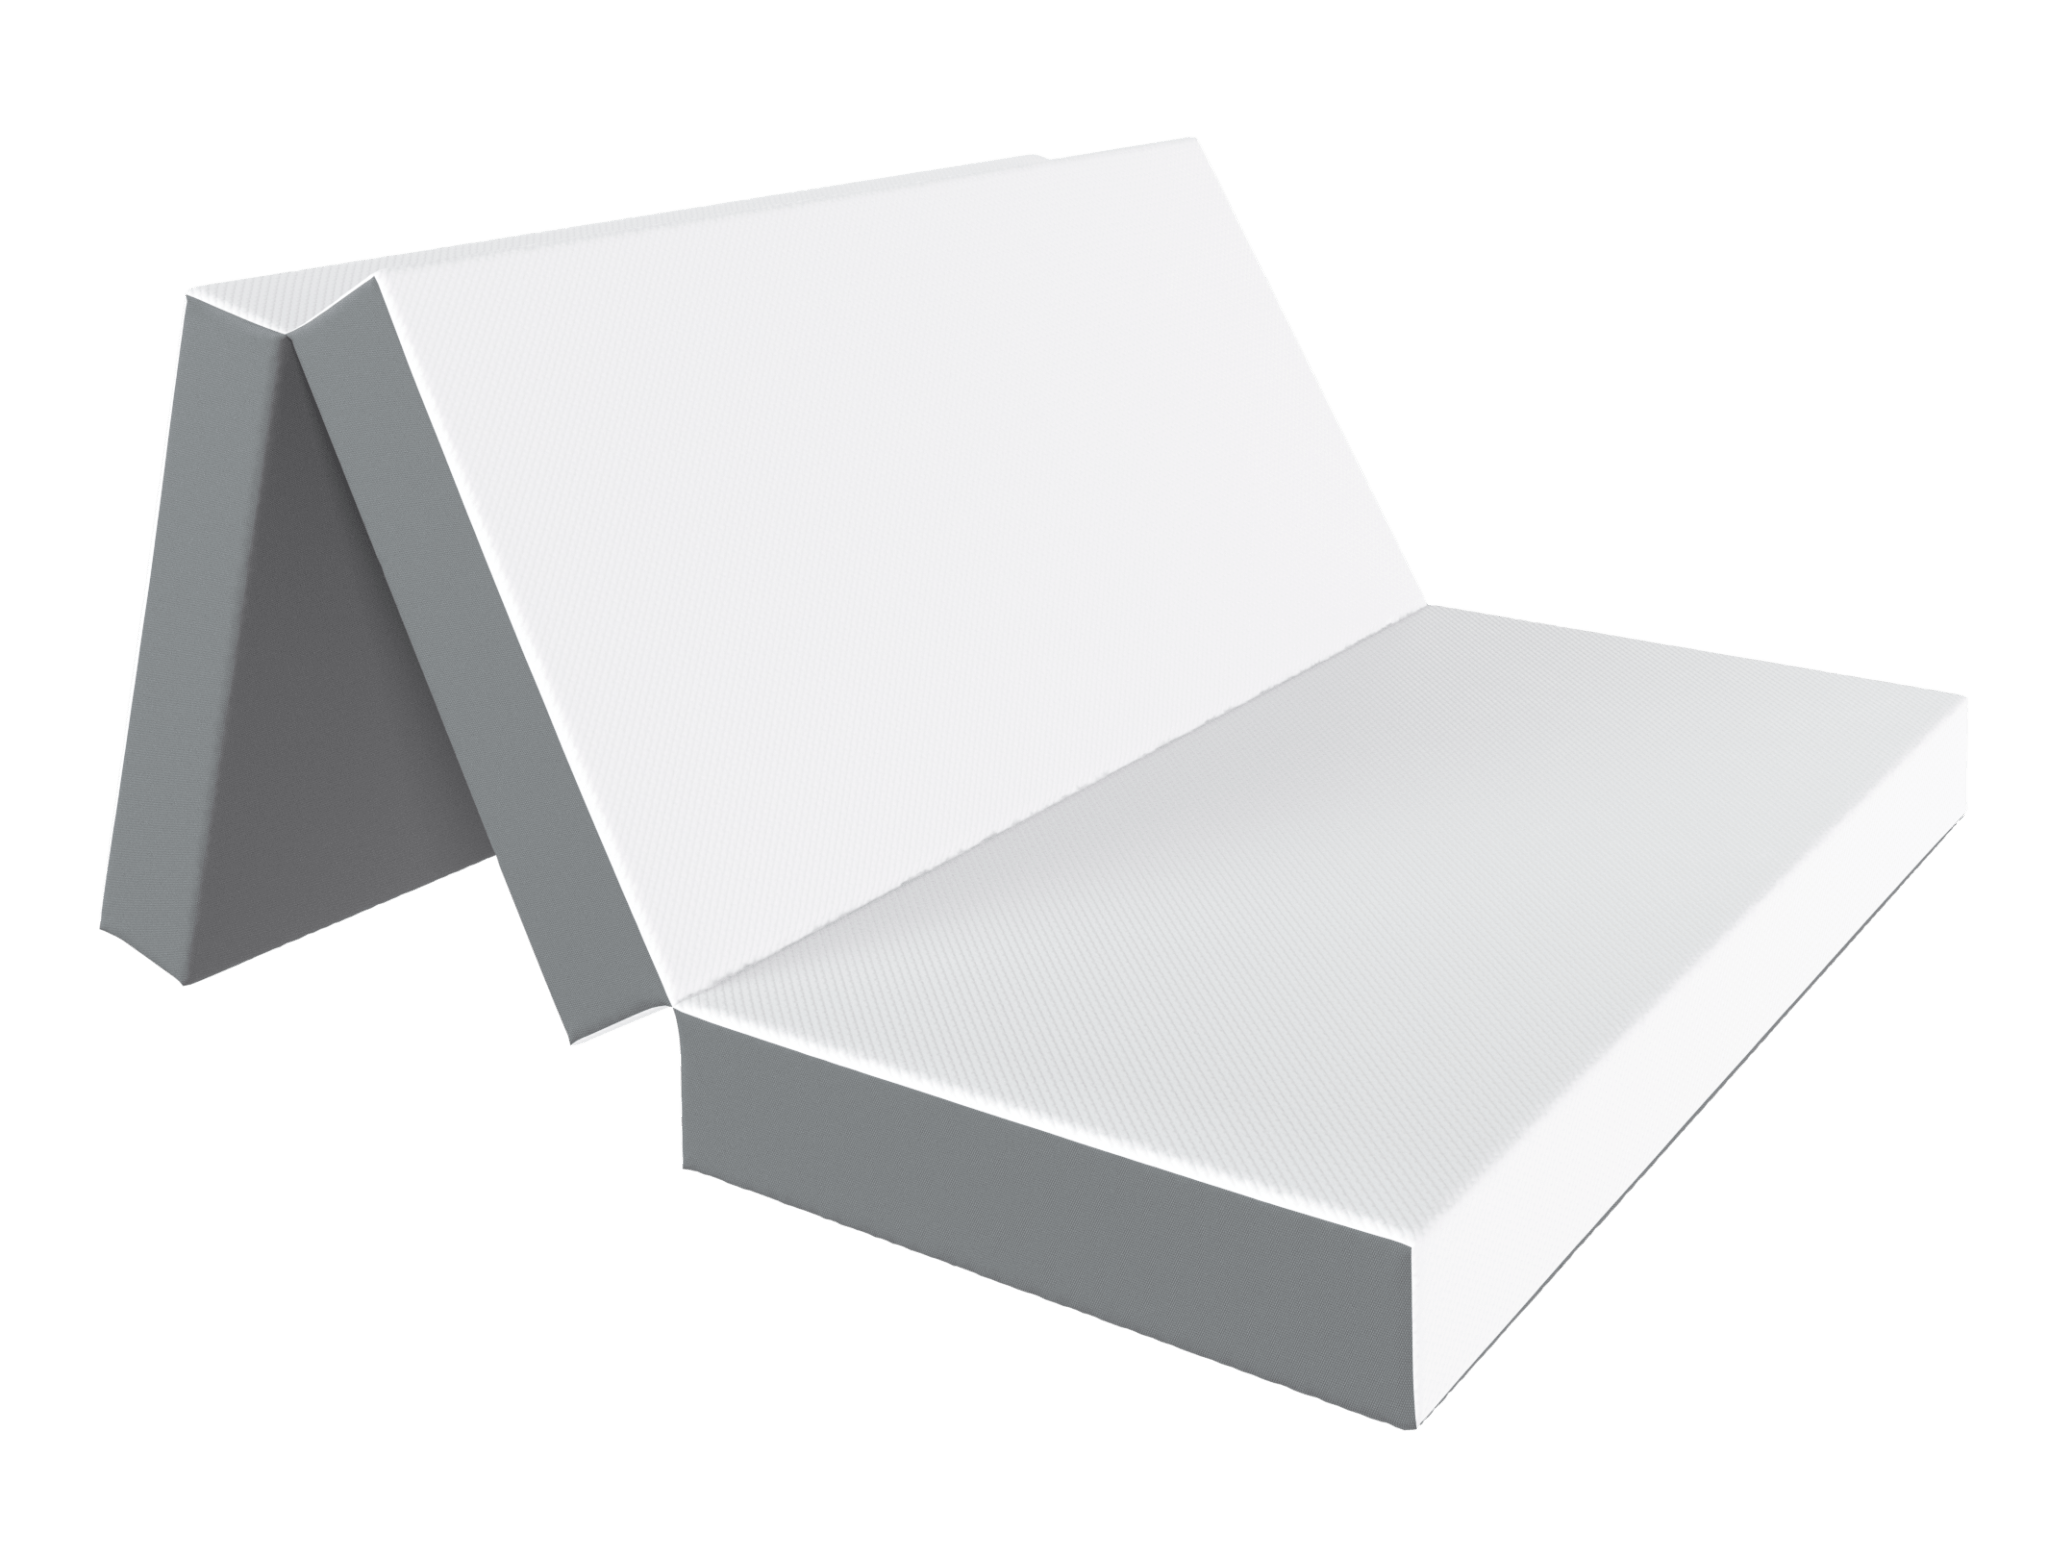 4.0 Inch GEL Memory Foam Sofa Mattress - DynastyMattress